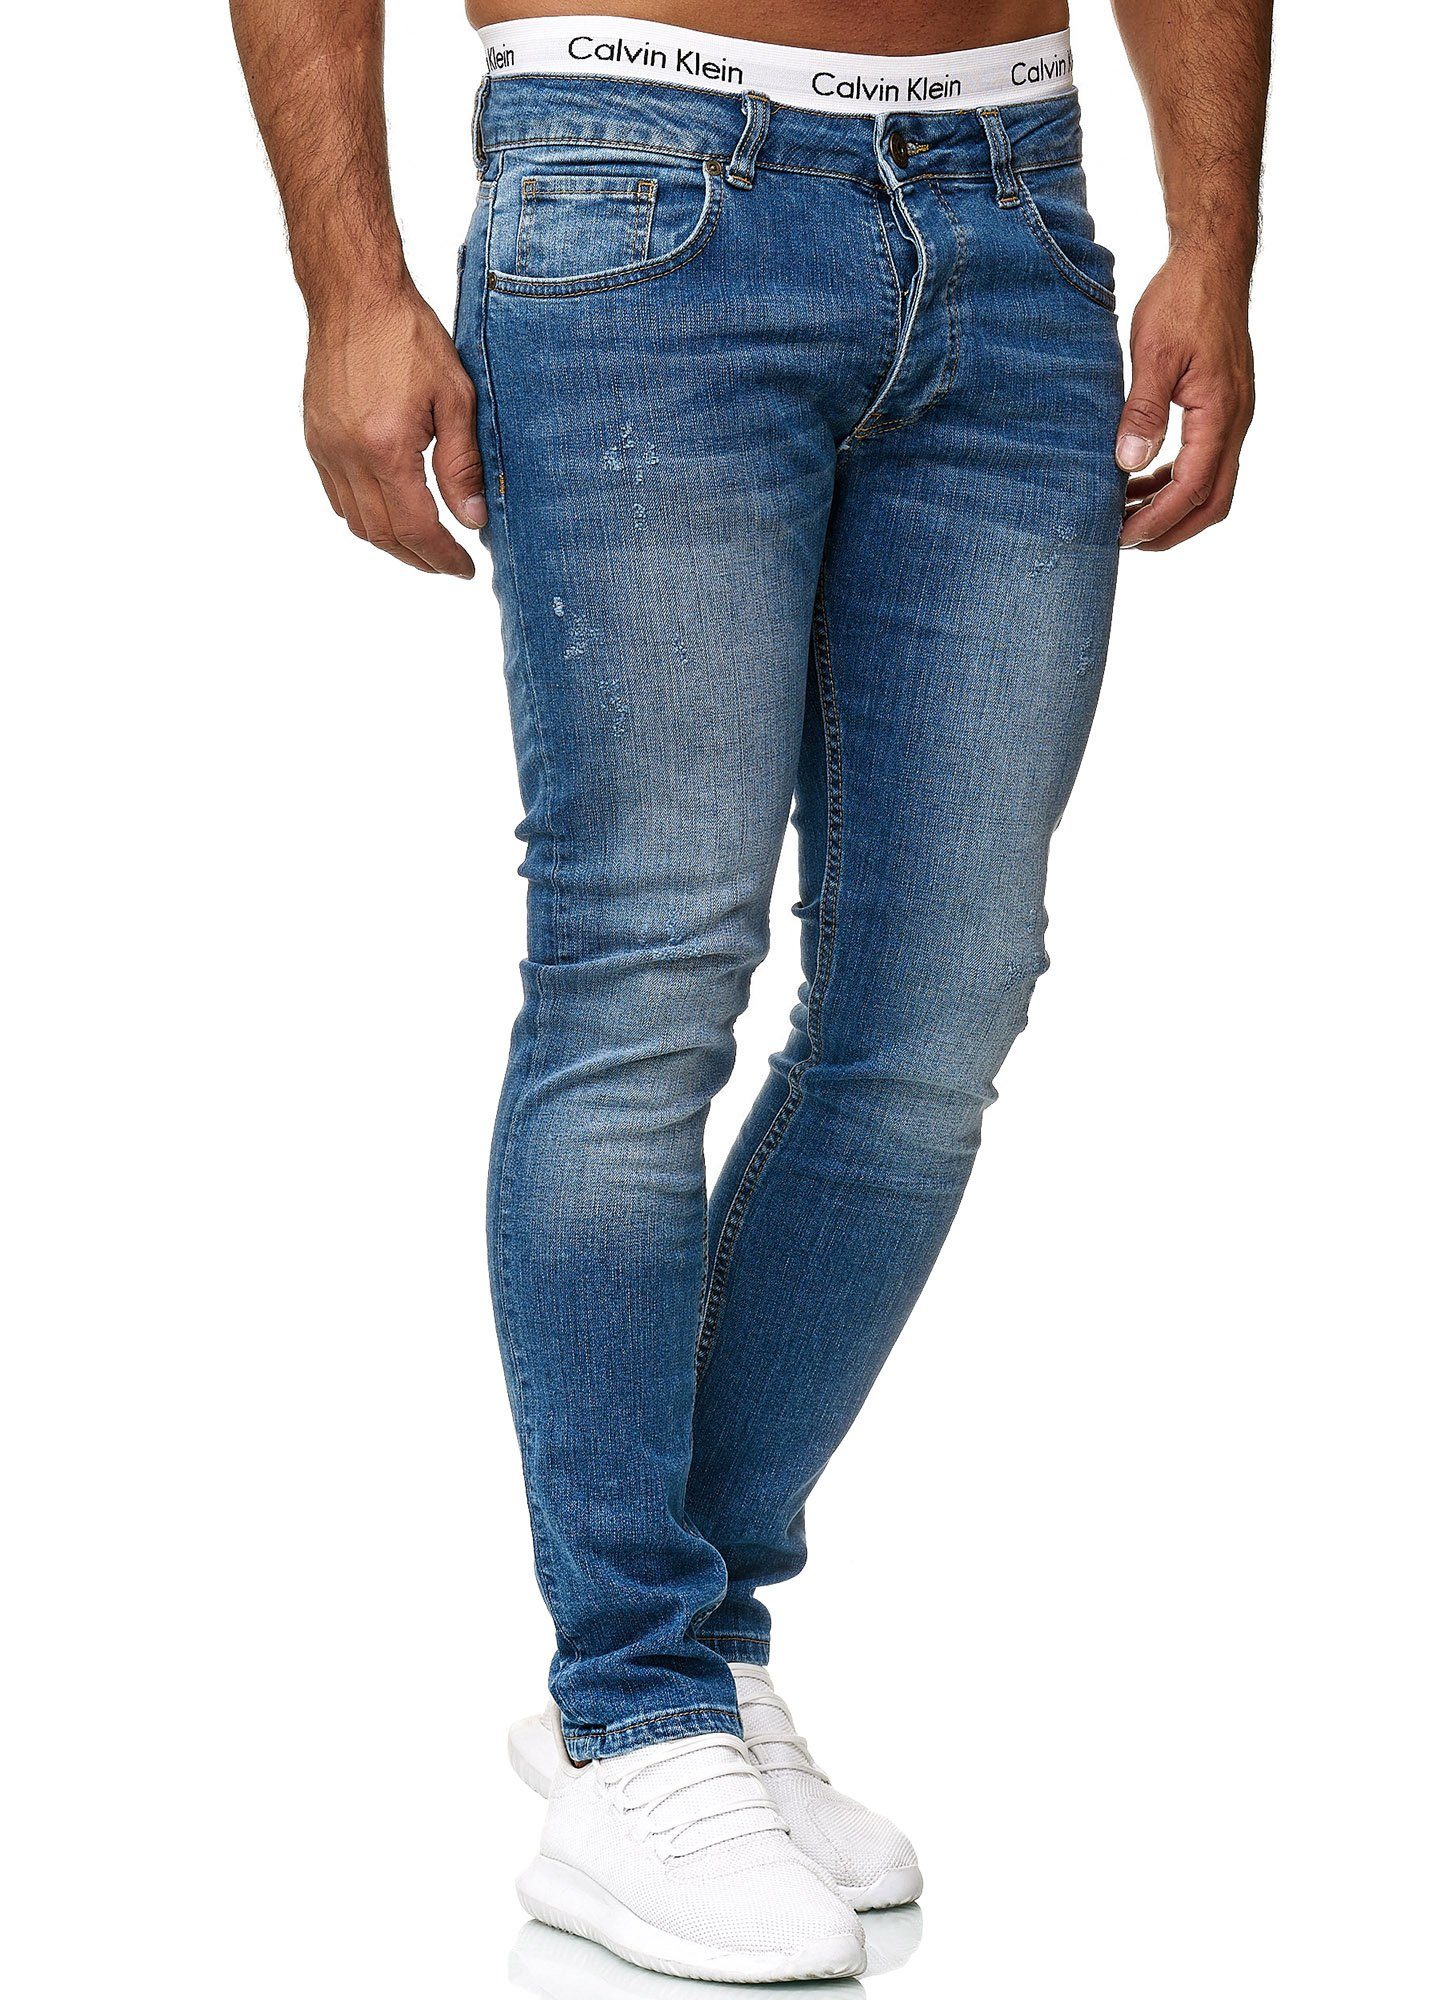 601 Regular Designer Jeans Used Basic Fit Skinny-fit-Jeans Blue Code47 Skinny Code47 Herren Hose Old Jeanshose